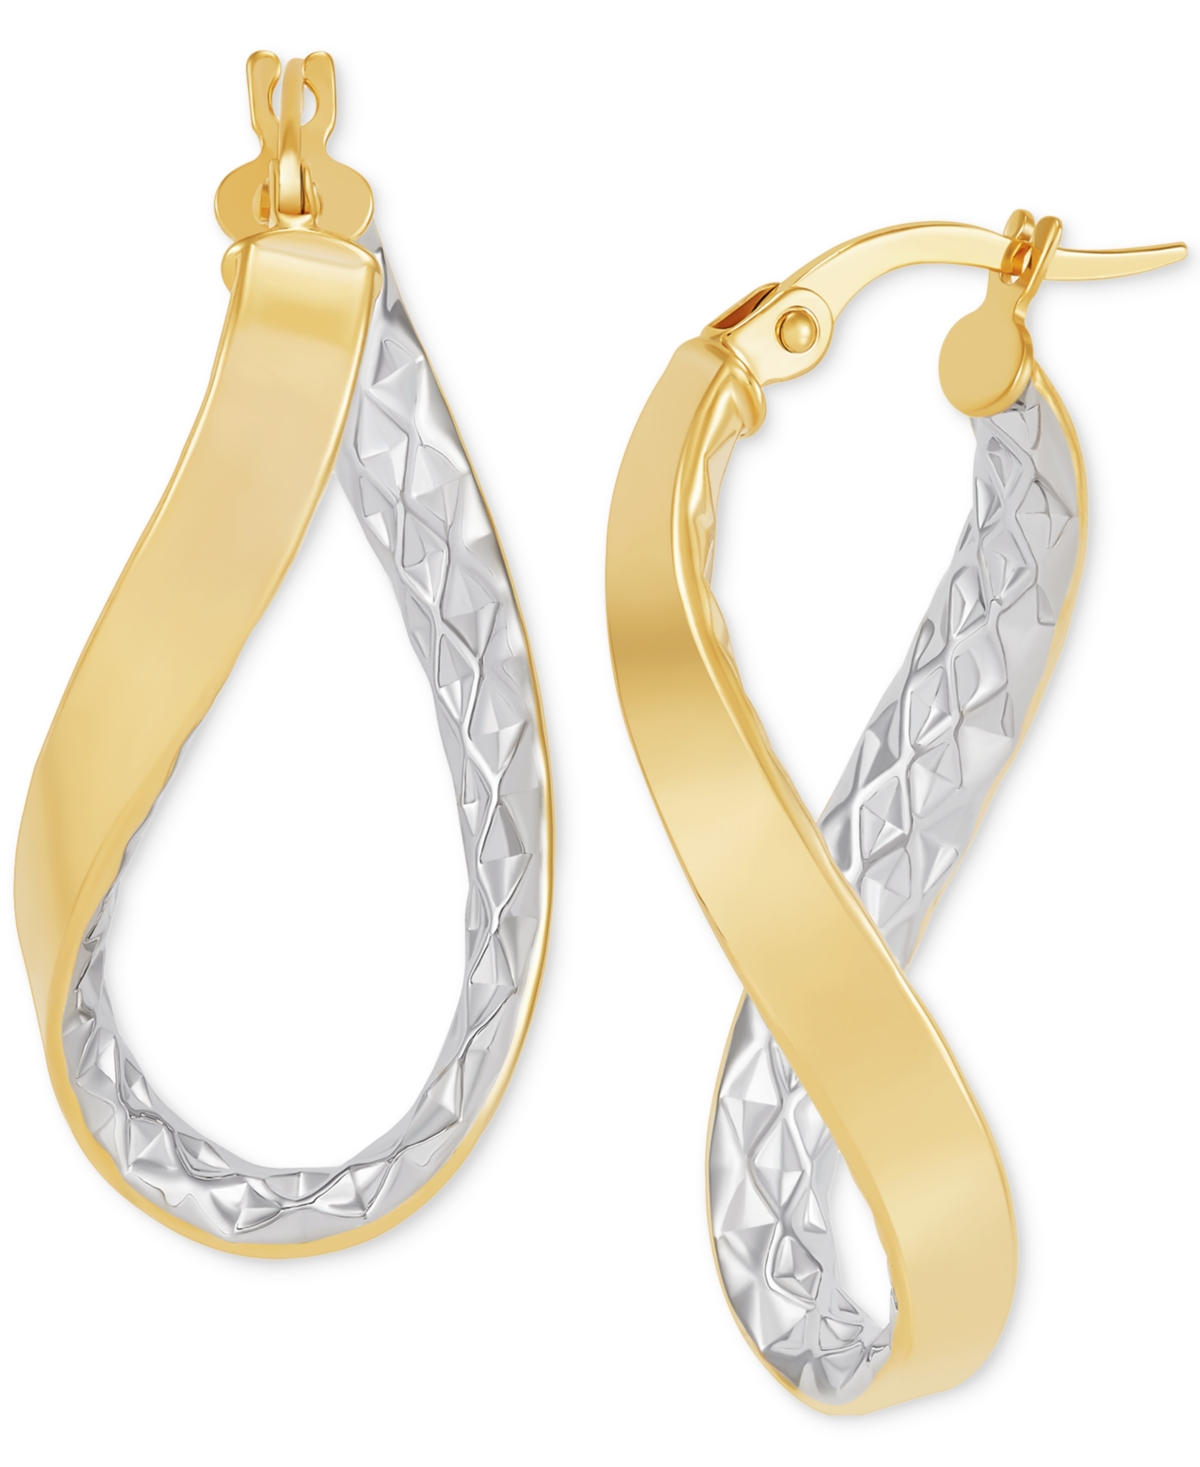 Macy's Polished & Textured Oval Twist Hoop Earrings In 10k Gold